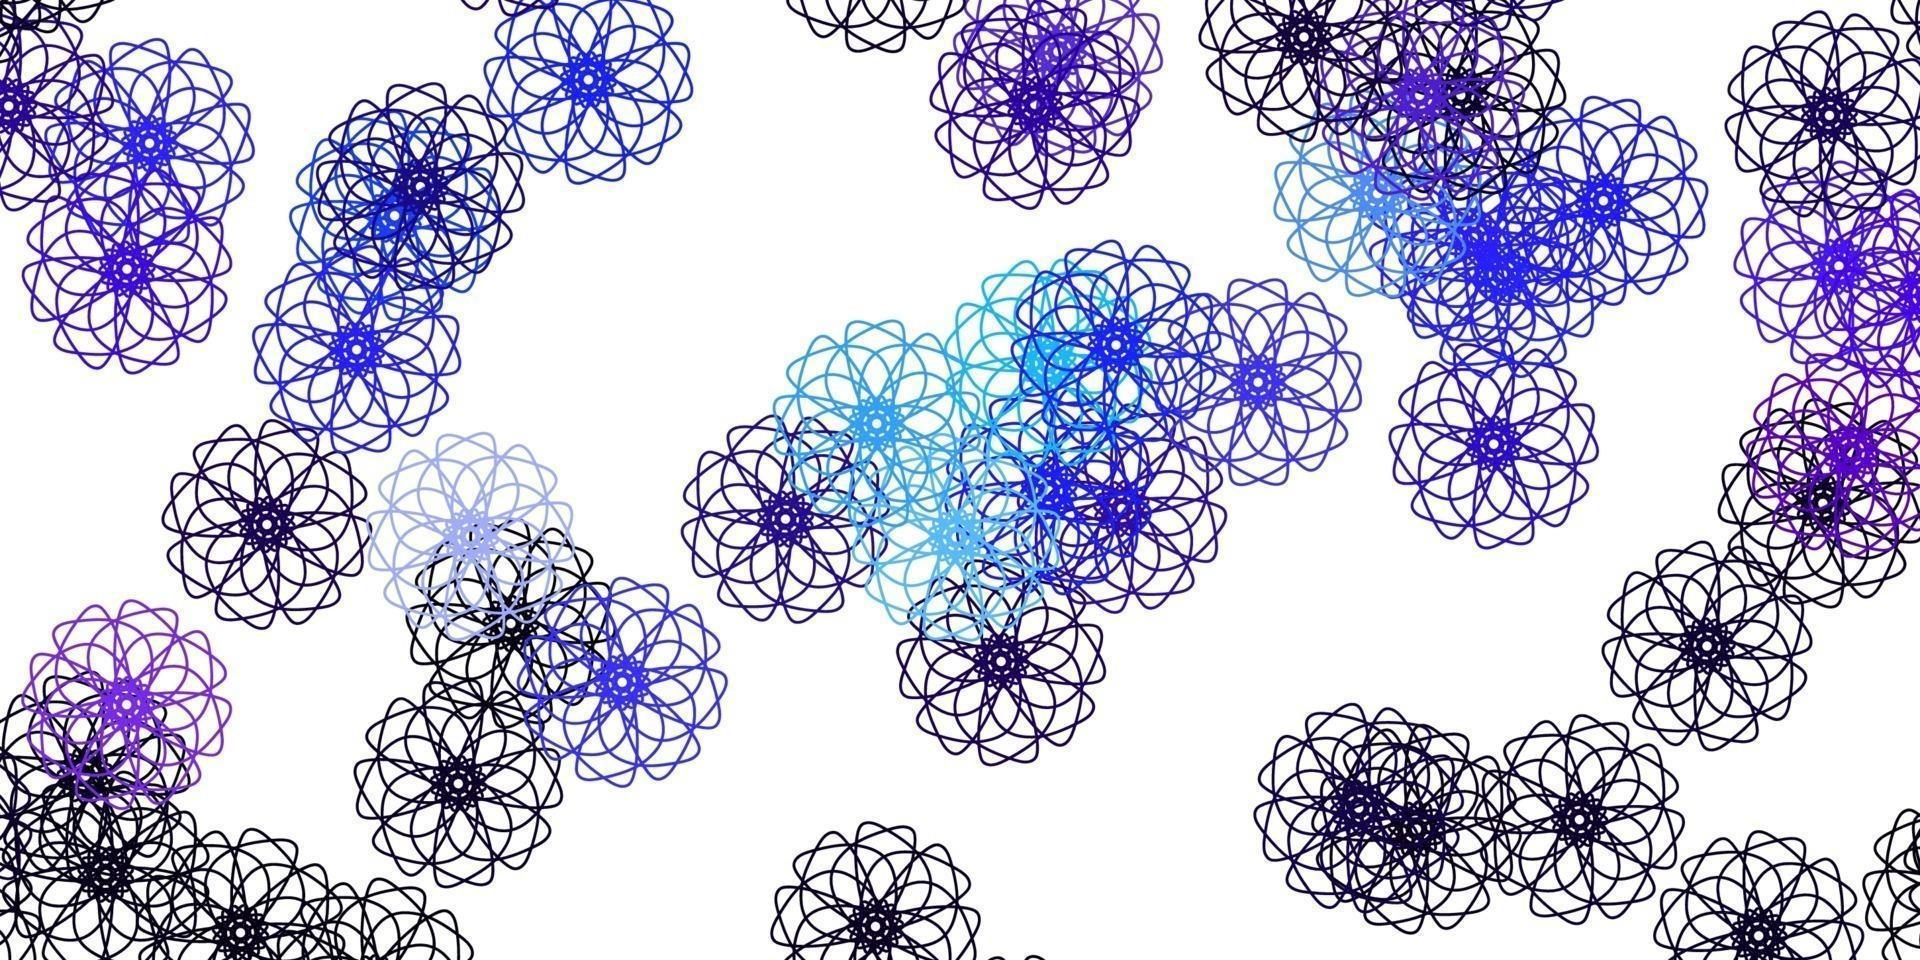 fond de doodle vecteur rose clair, bleu avec des fleurs.